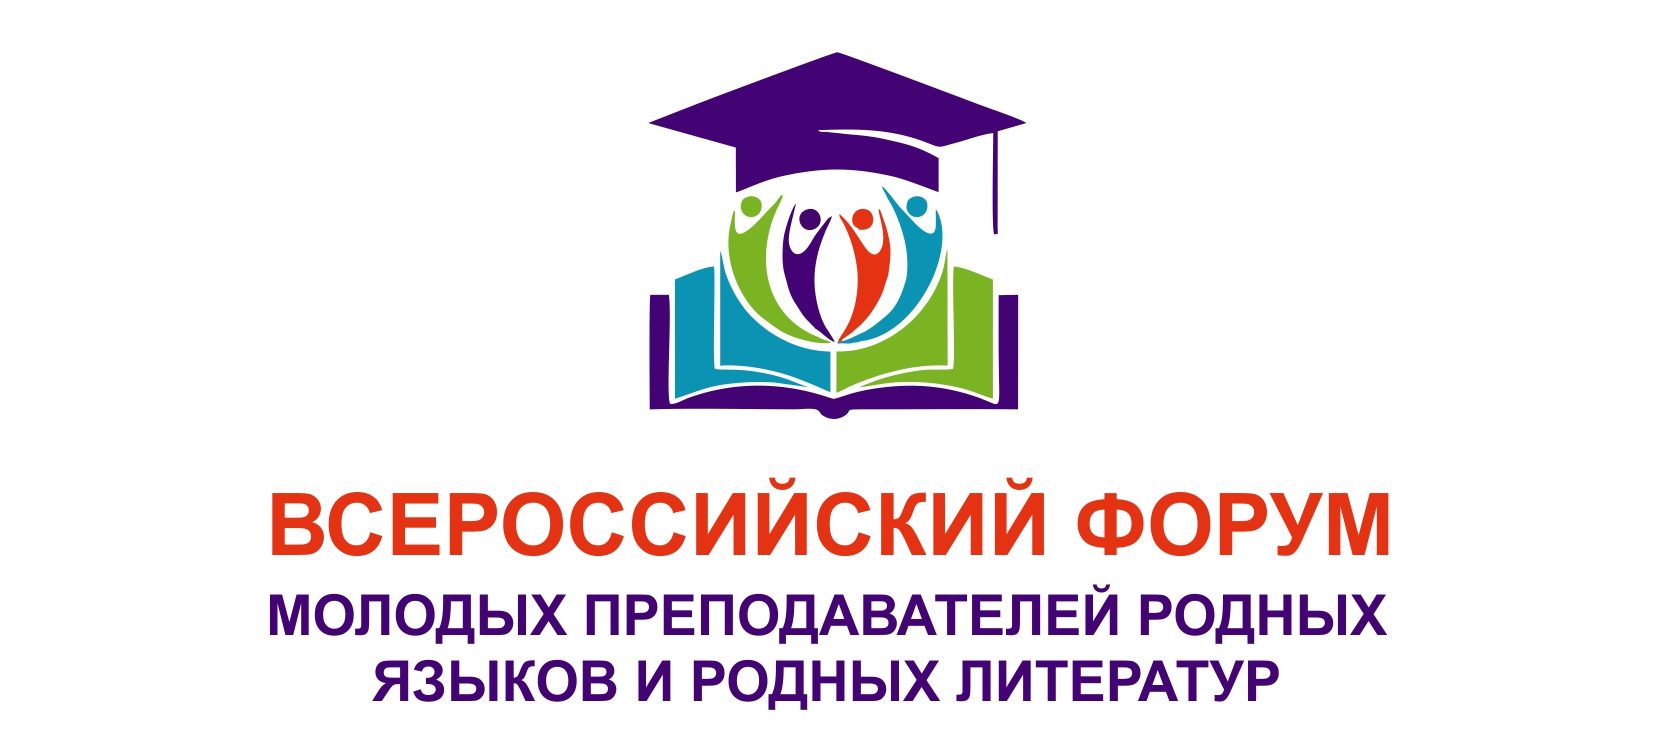 Всероссийский форум молодых преподавателей родных языков и родных литератур